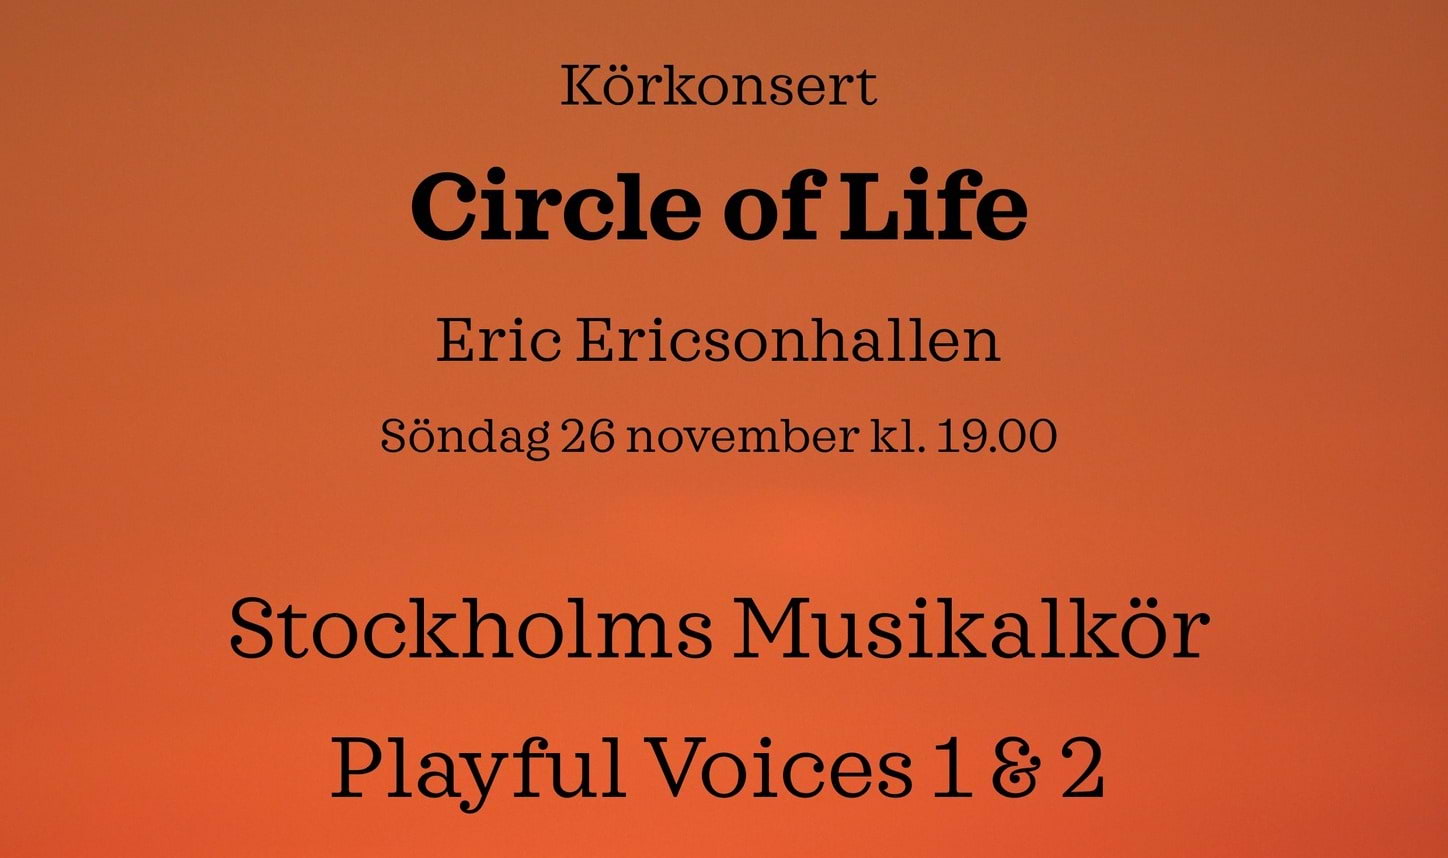 Circle of life – körkonsert med Vasastans Körakademi